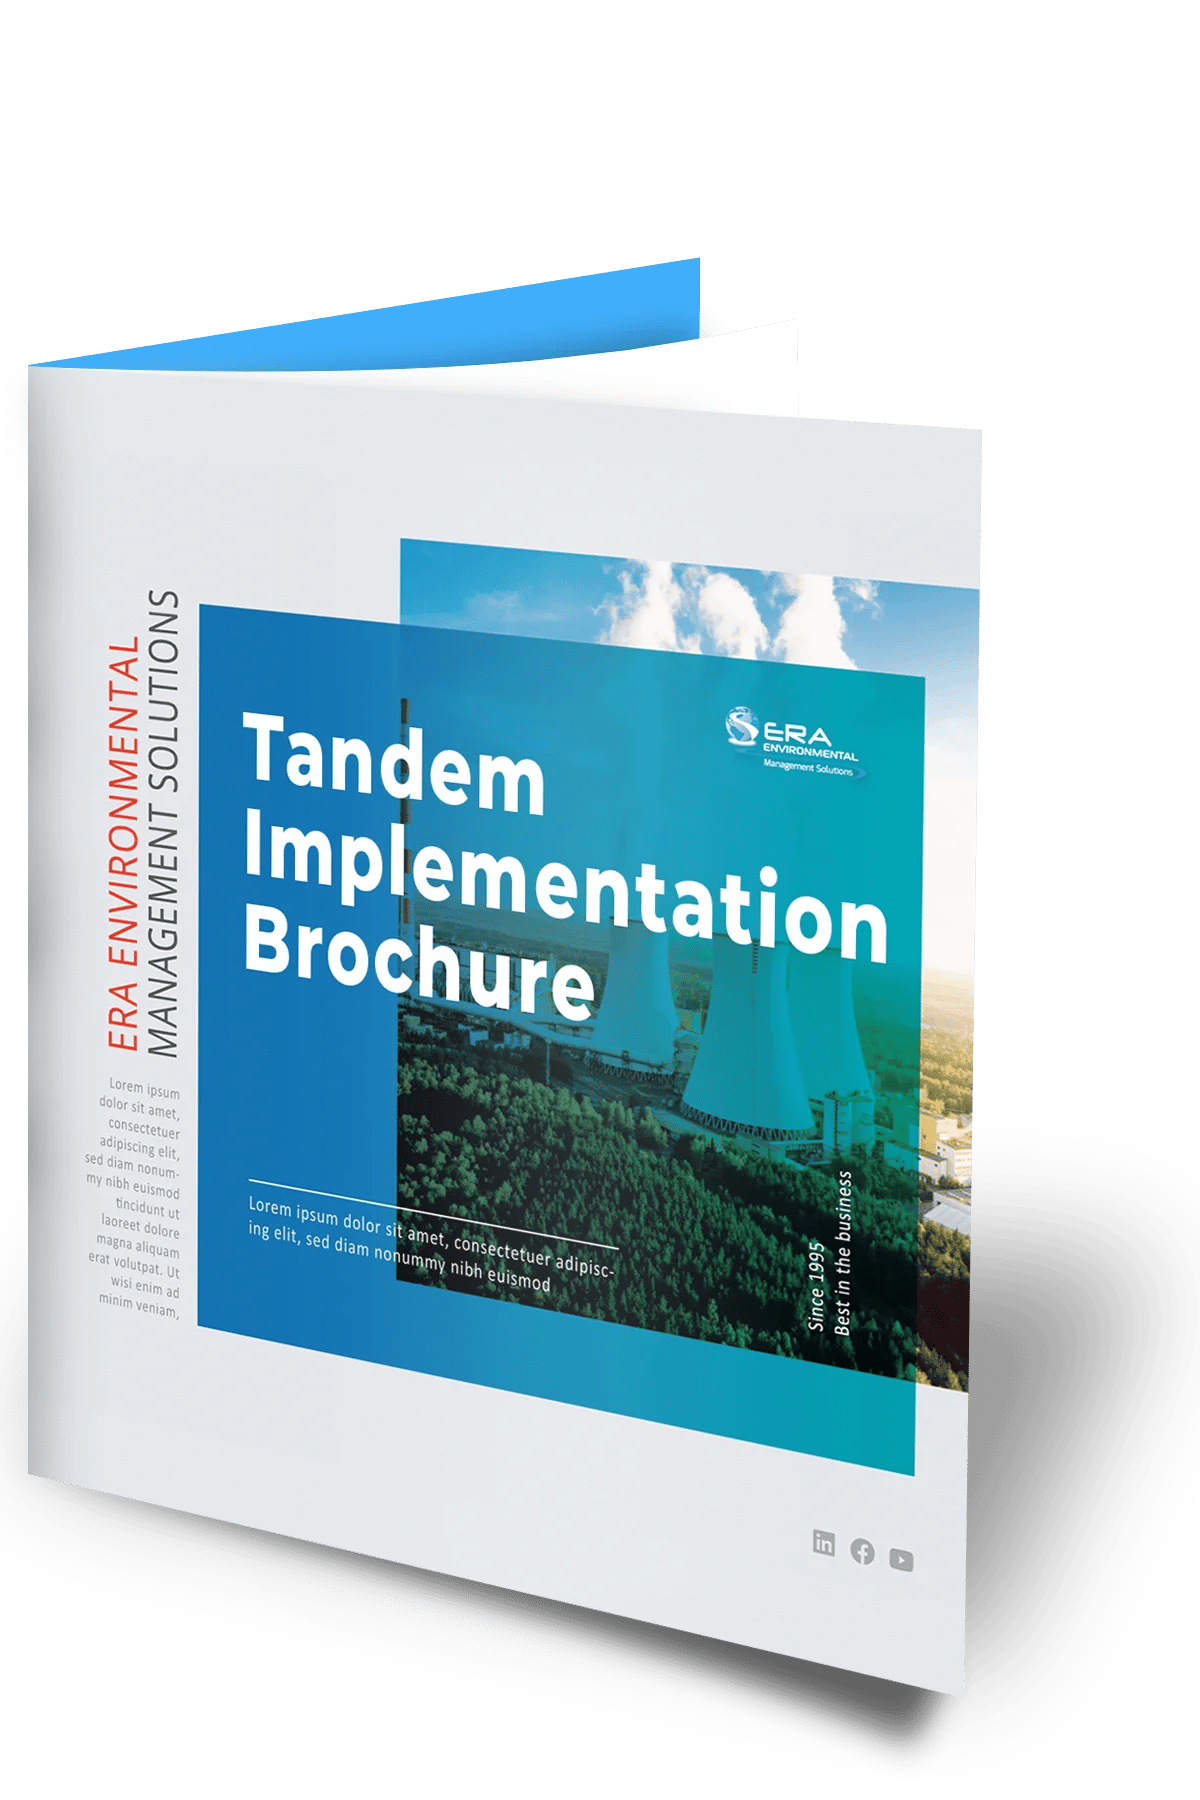 Tandem-Implementationt-brochure-mock-up